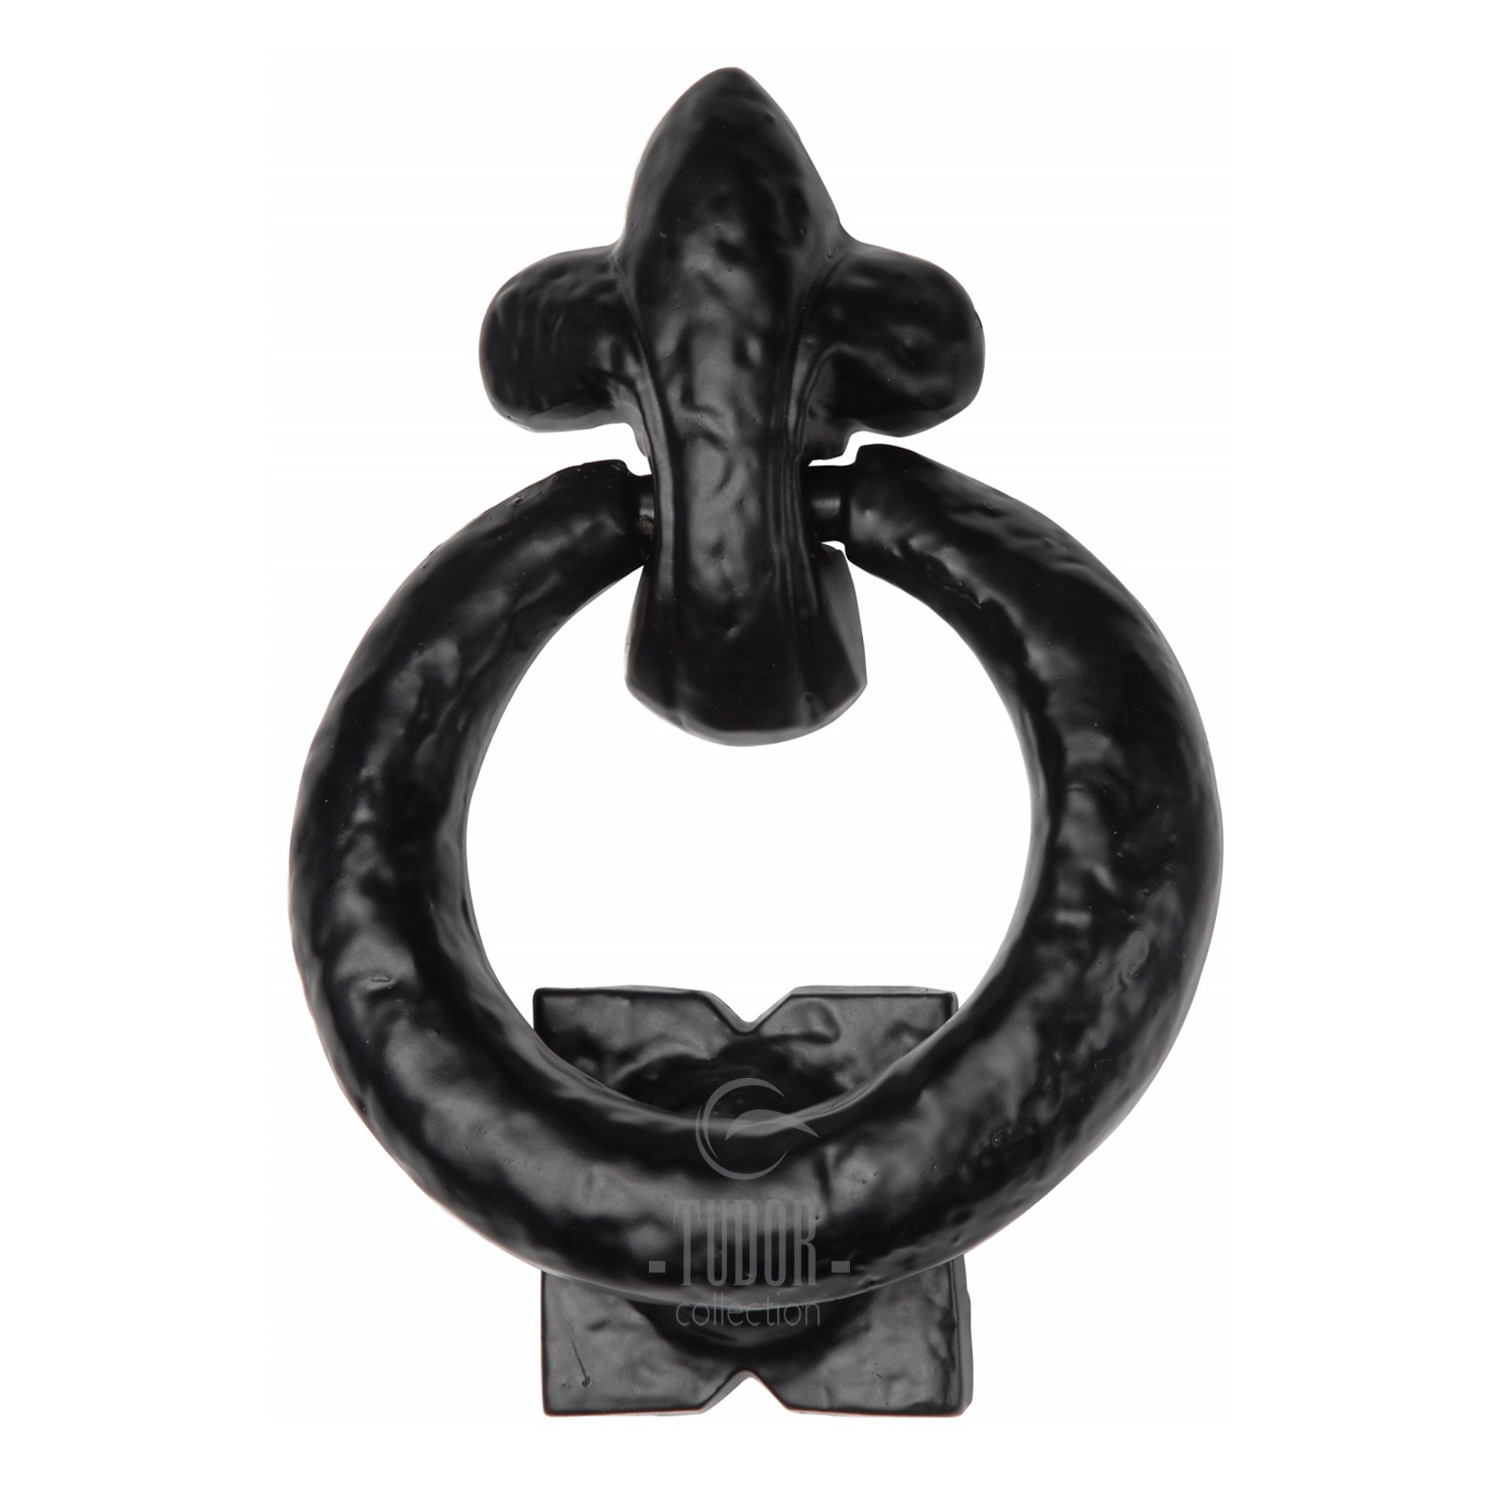 The Tudor Ring Knocker Black Iron